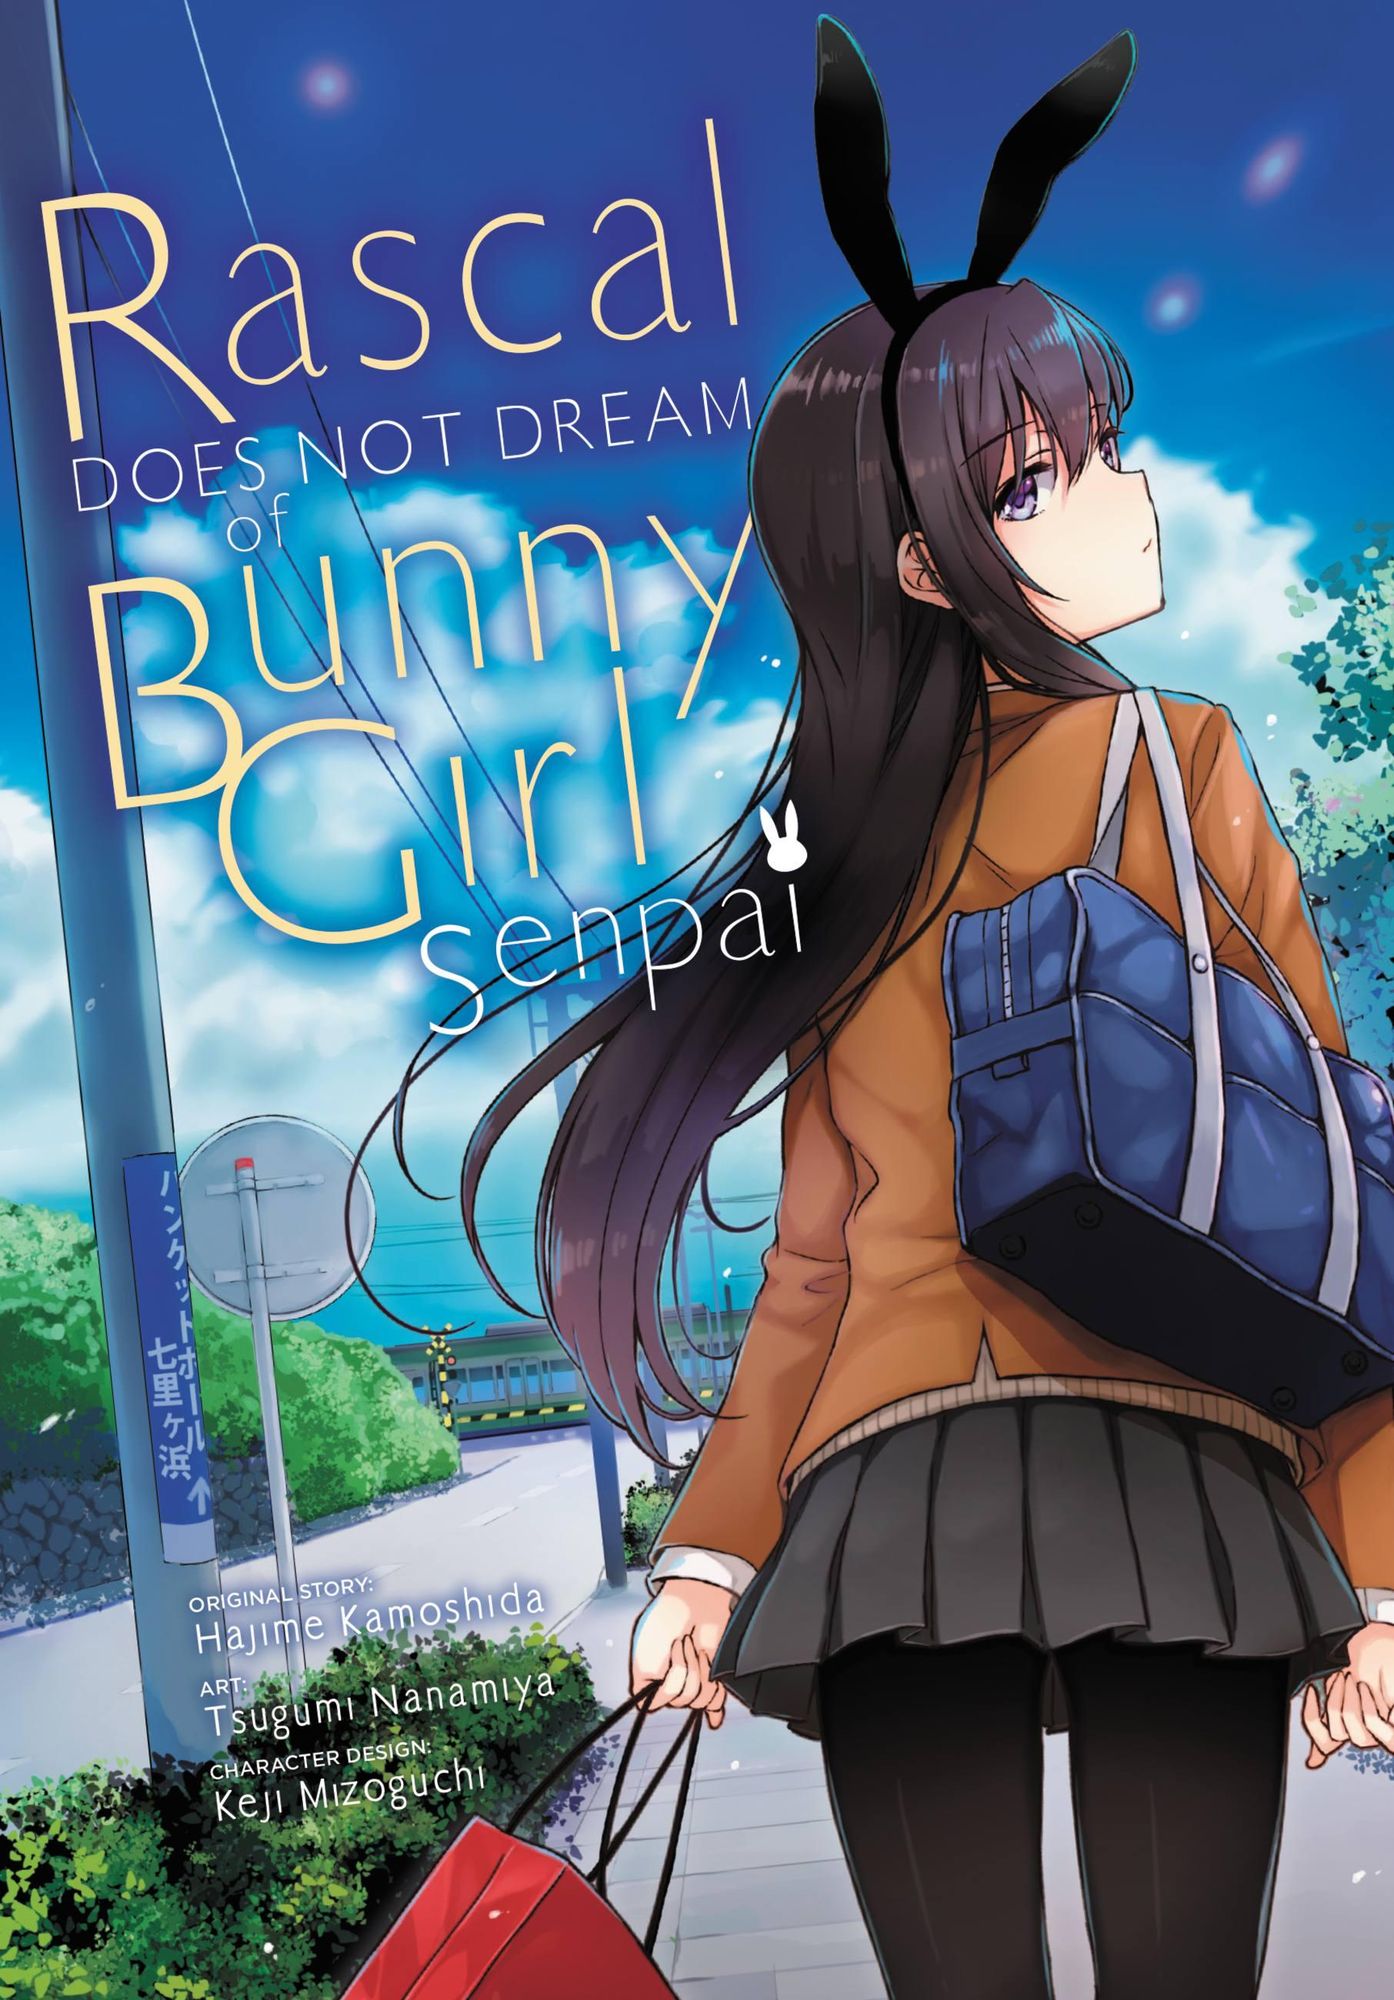 season 2 for bunny girl senpai｜TikTok-Suche